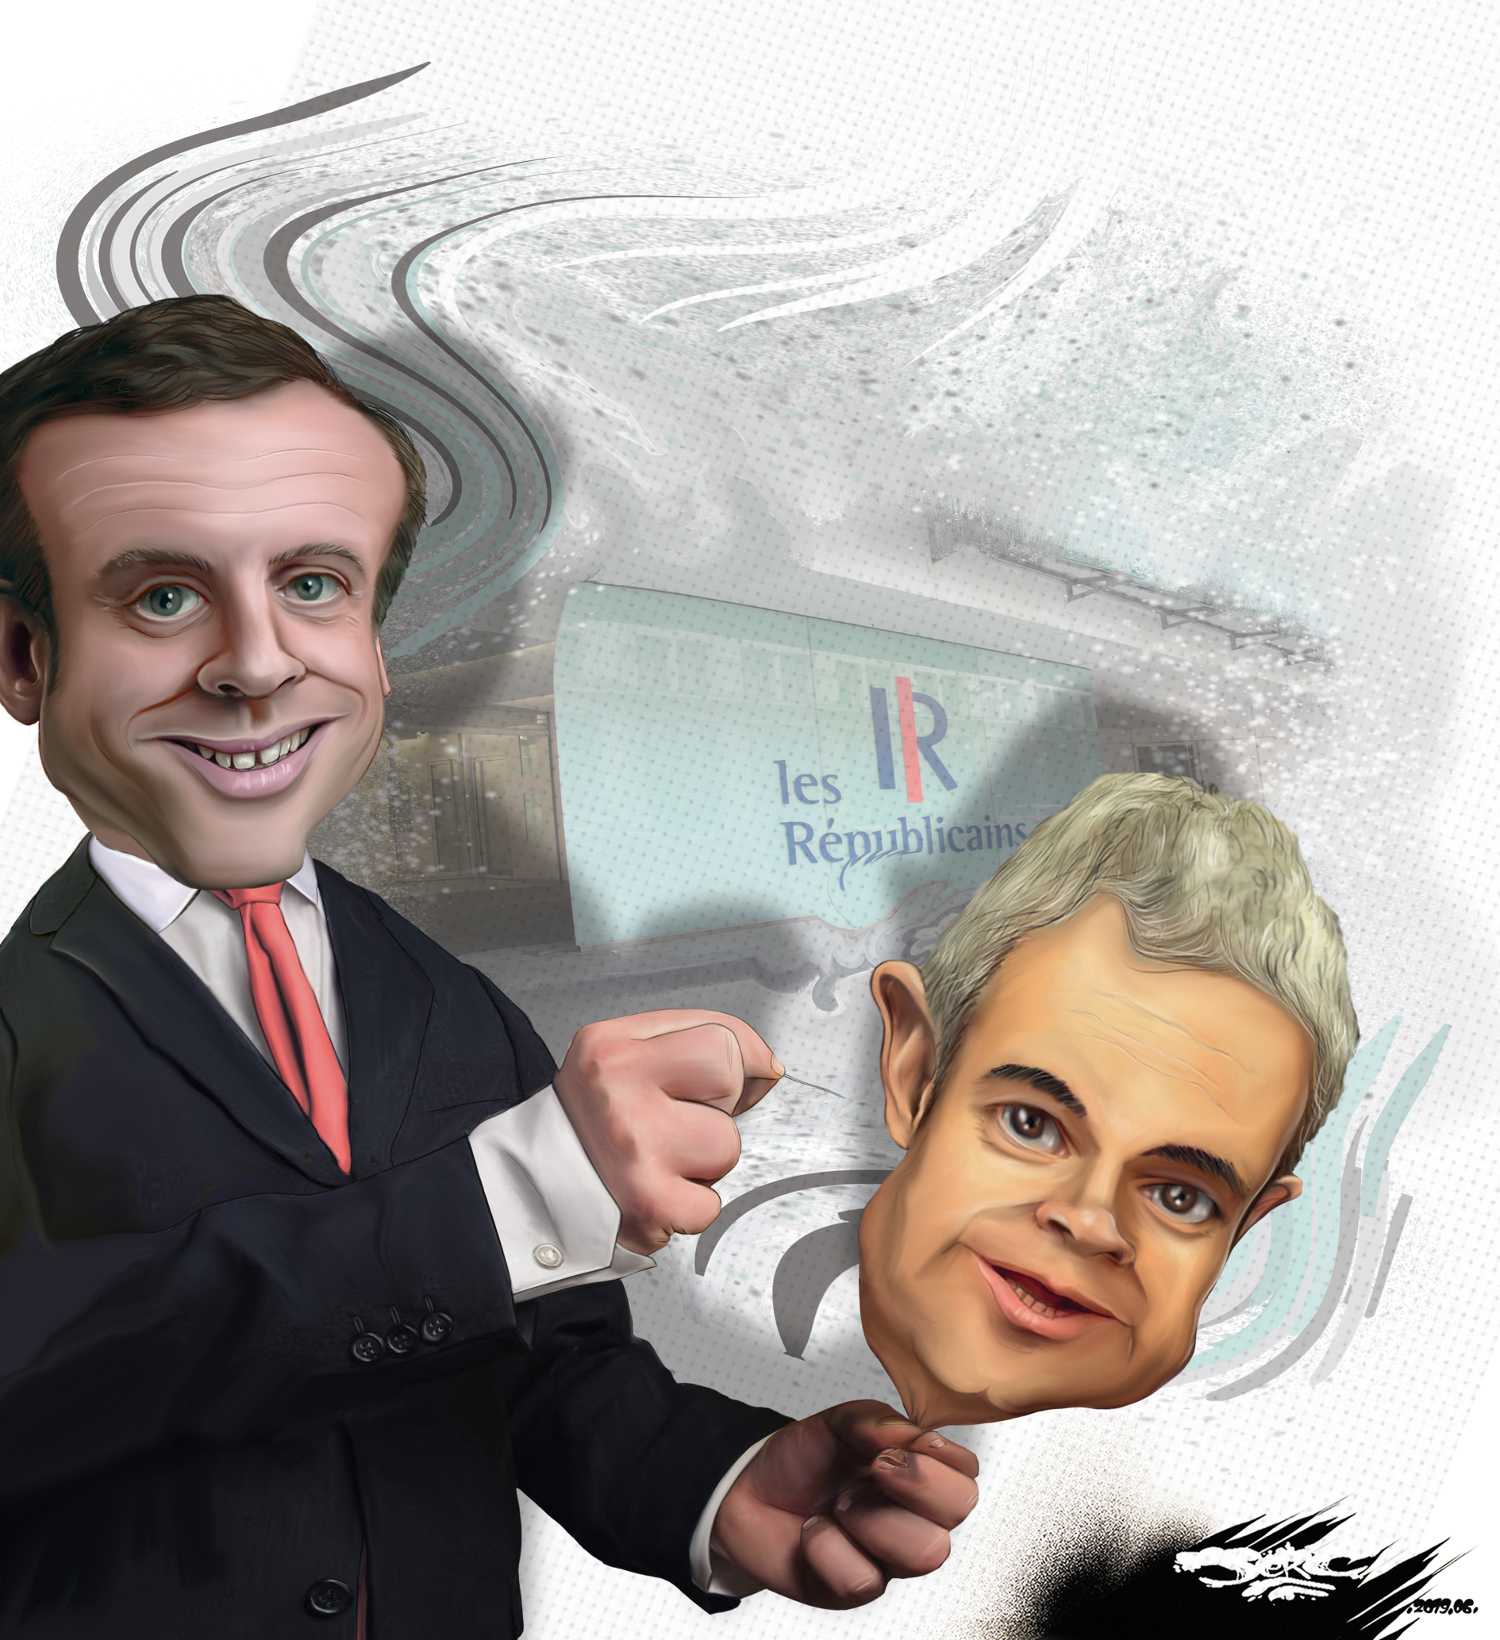 jerc-caricature-Emmanuel-Macron-Laurent-Wauquiez-deglonfage-de-baudruche-st-2019-06-02